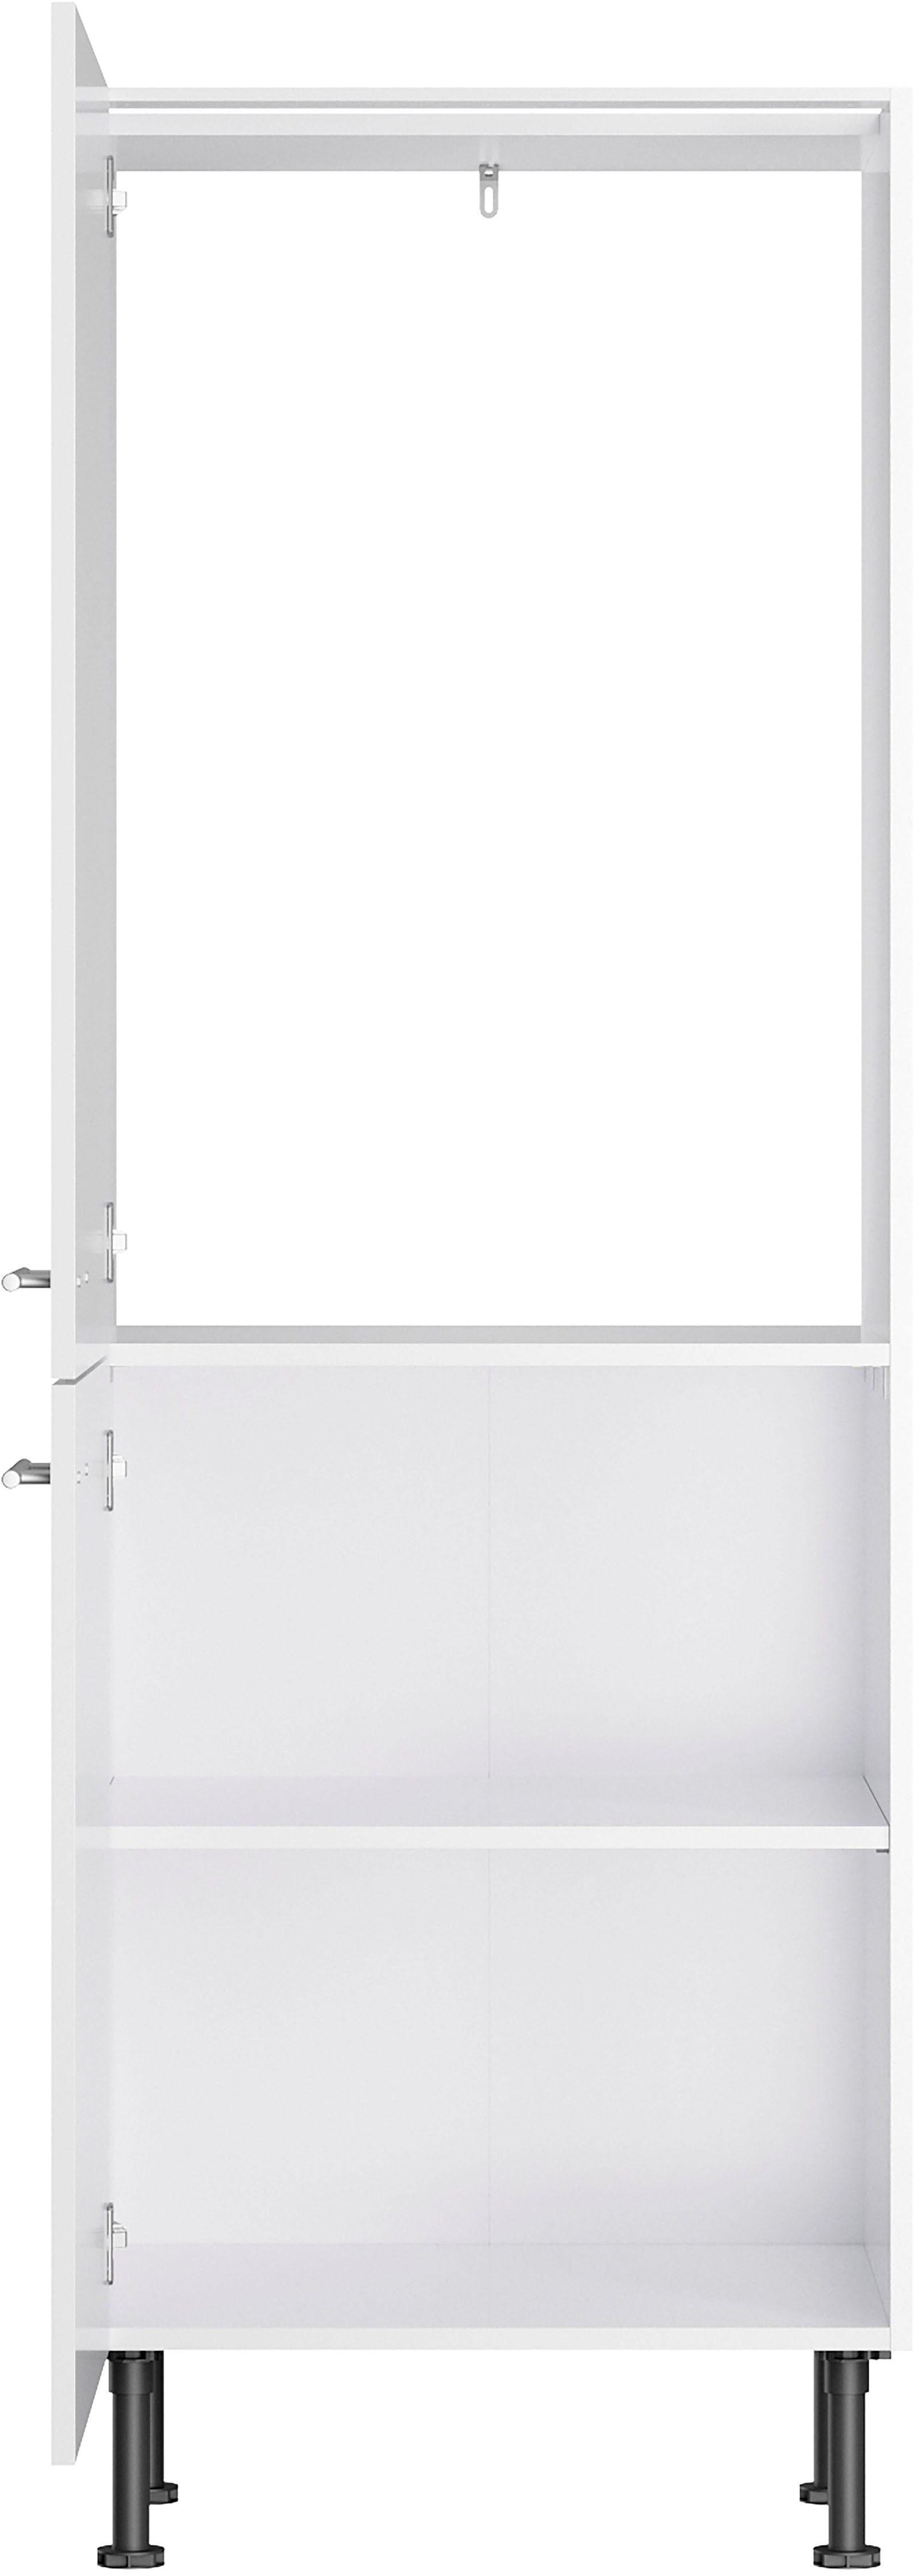 Klara Breite lackiert/weiß Kühlumbauschrank OPTIFIT 60 cm weiß